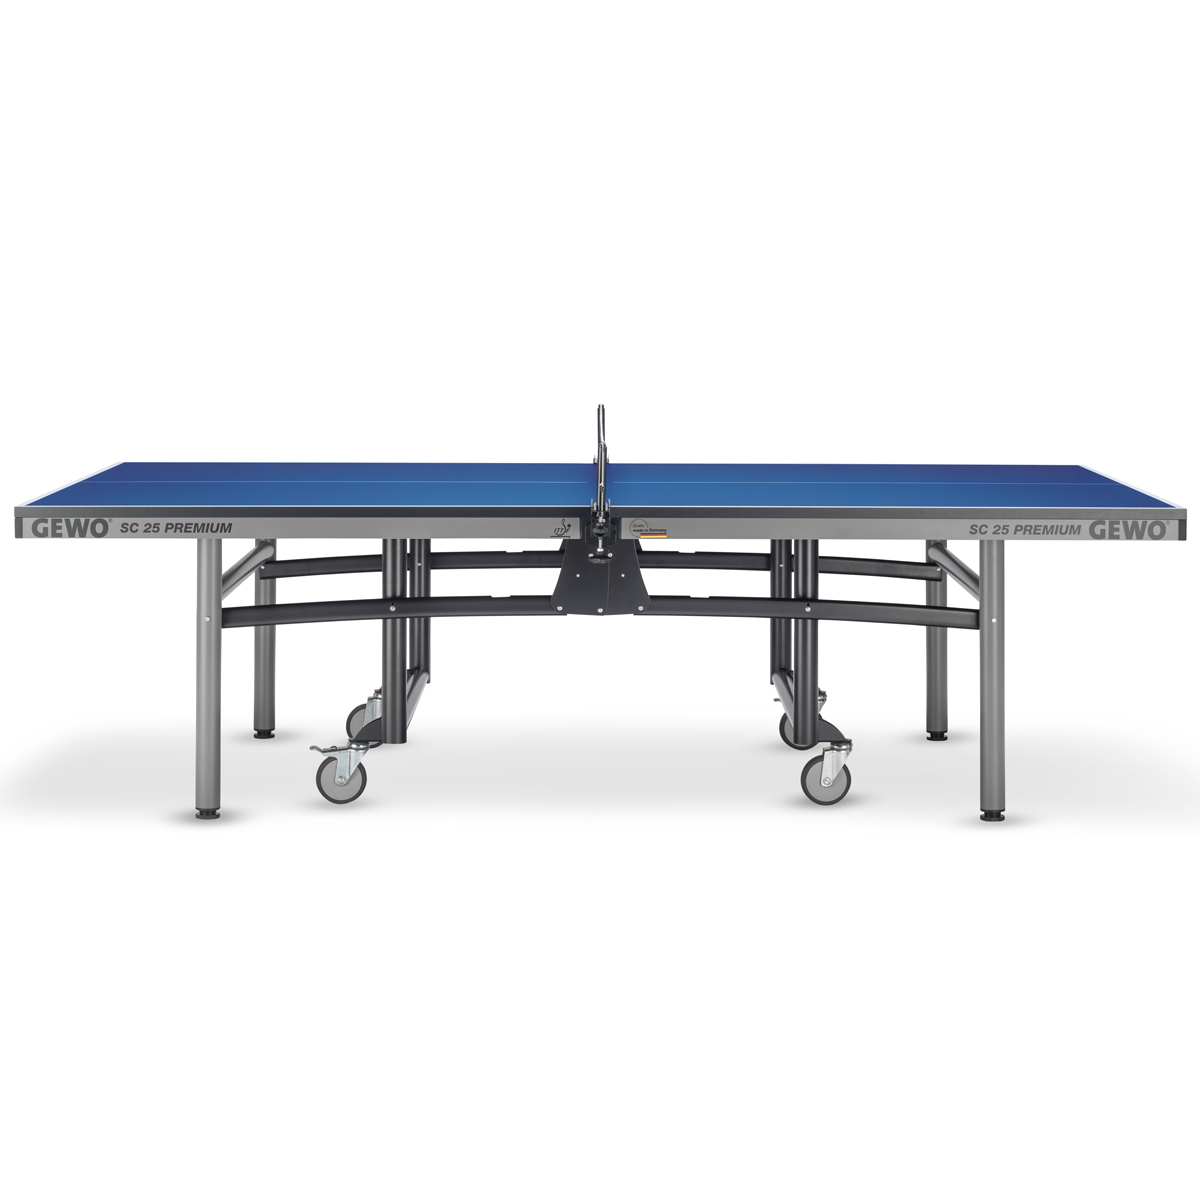 GEWO Table SC 25 Premium blue